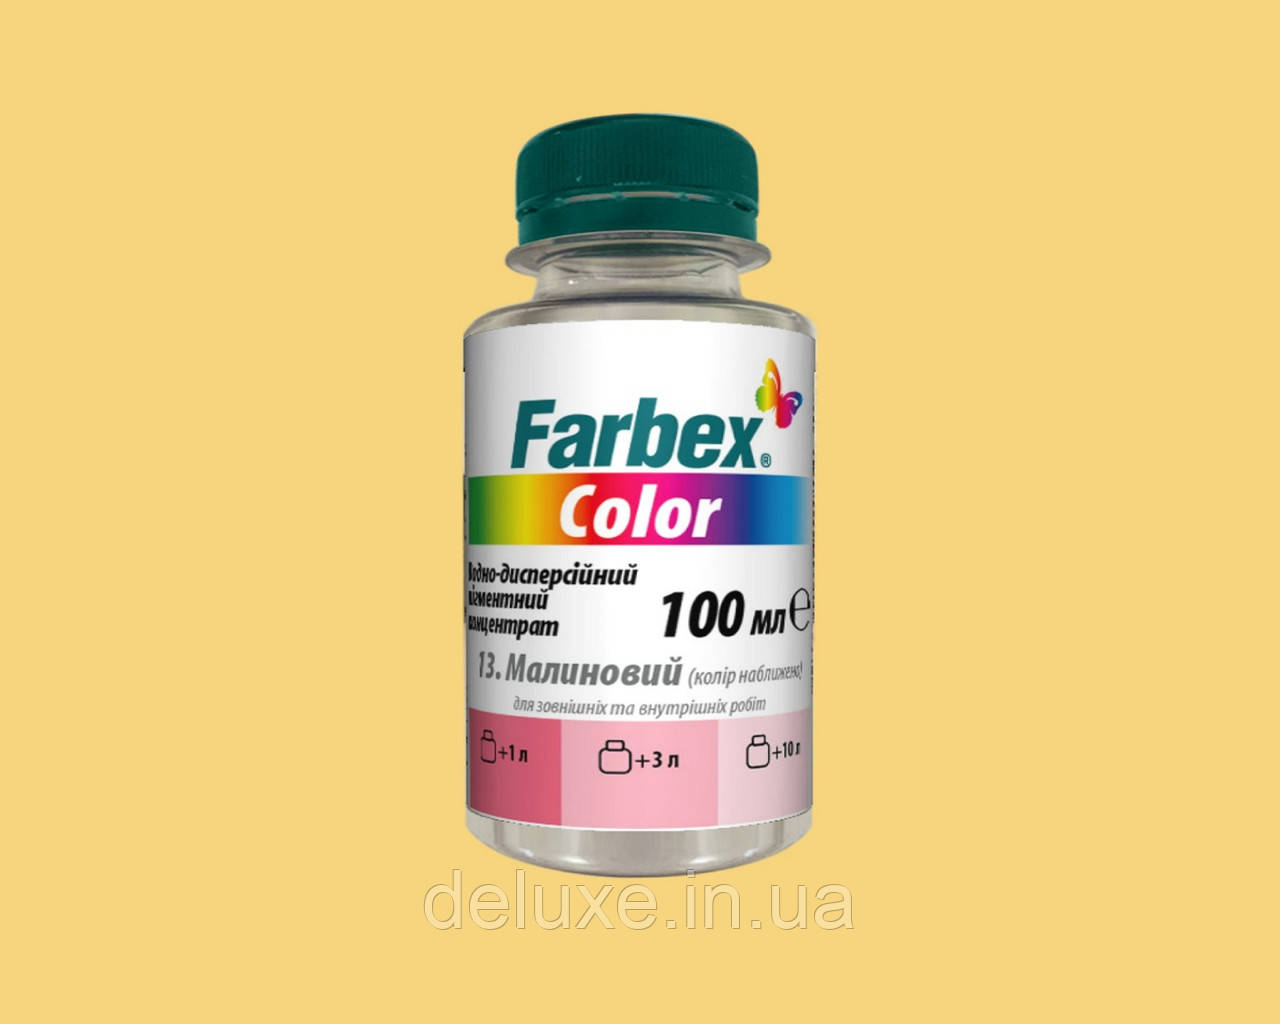 Пігментний концентрат Color універсальний, жовтий, 100мл, ТМ "Farbex"